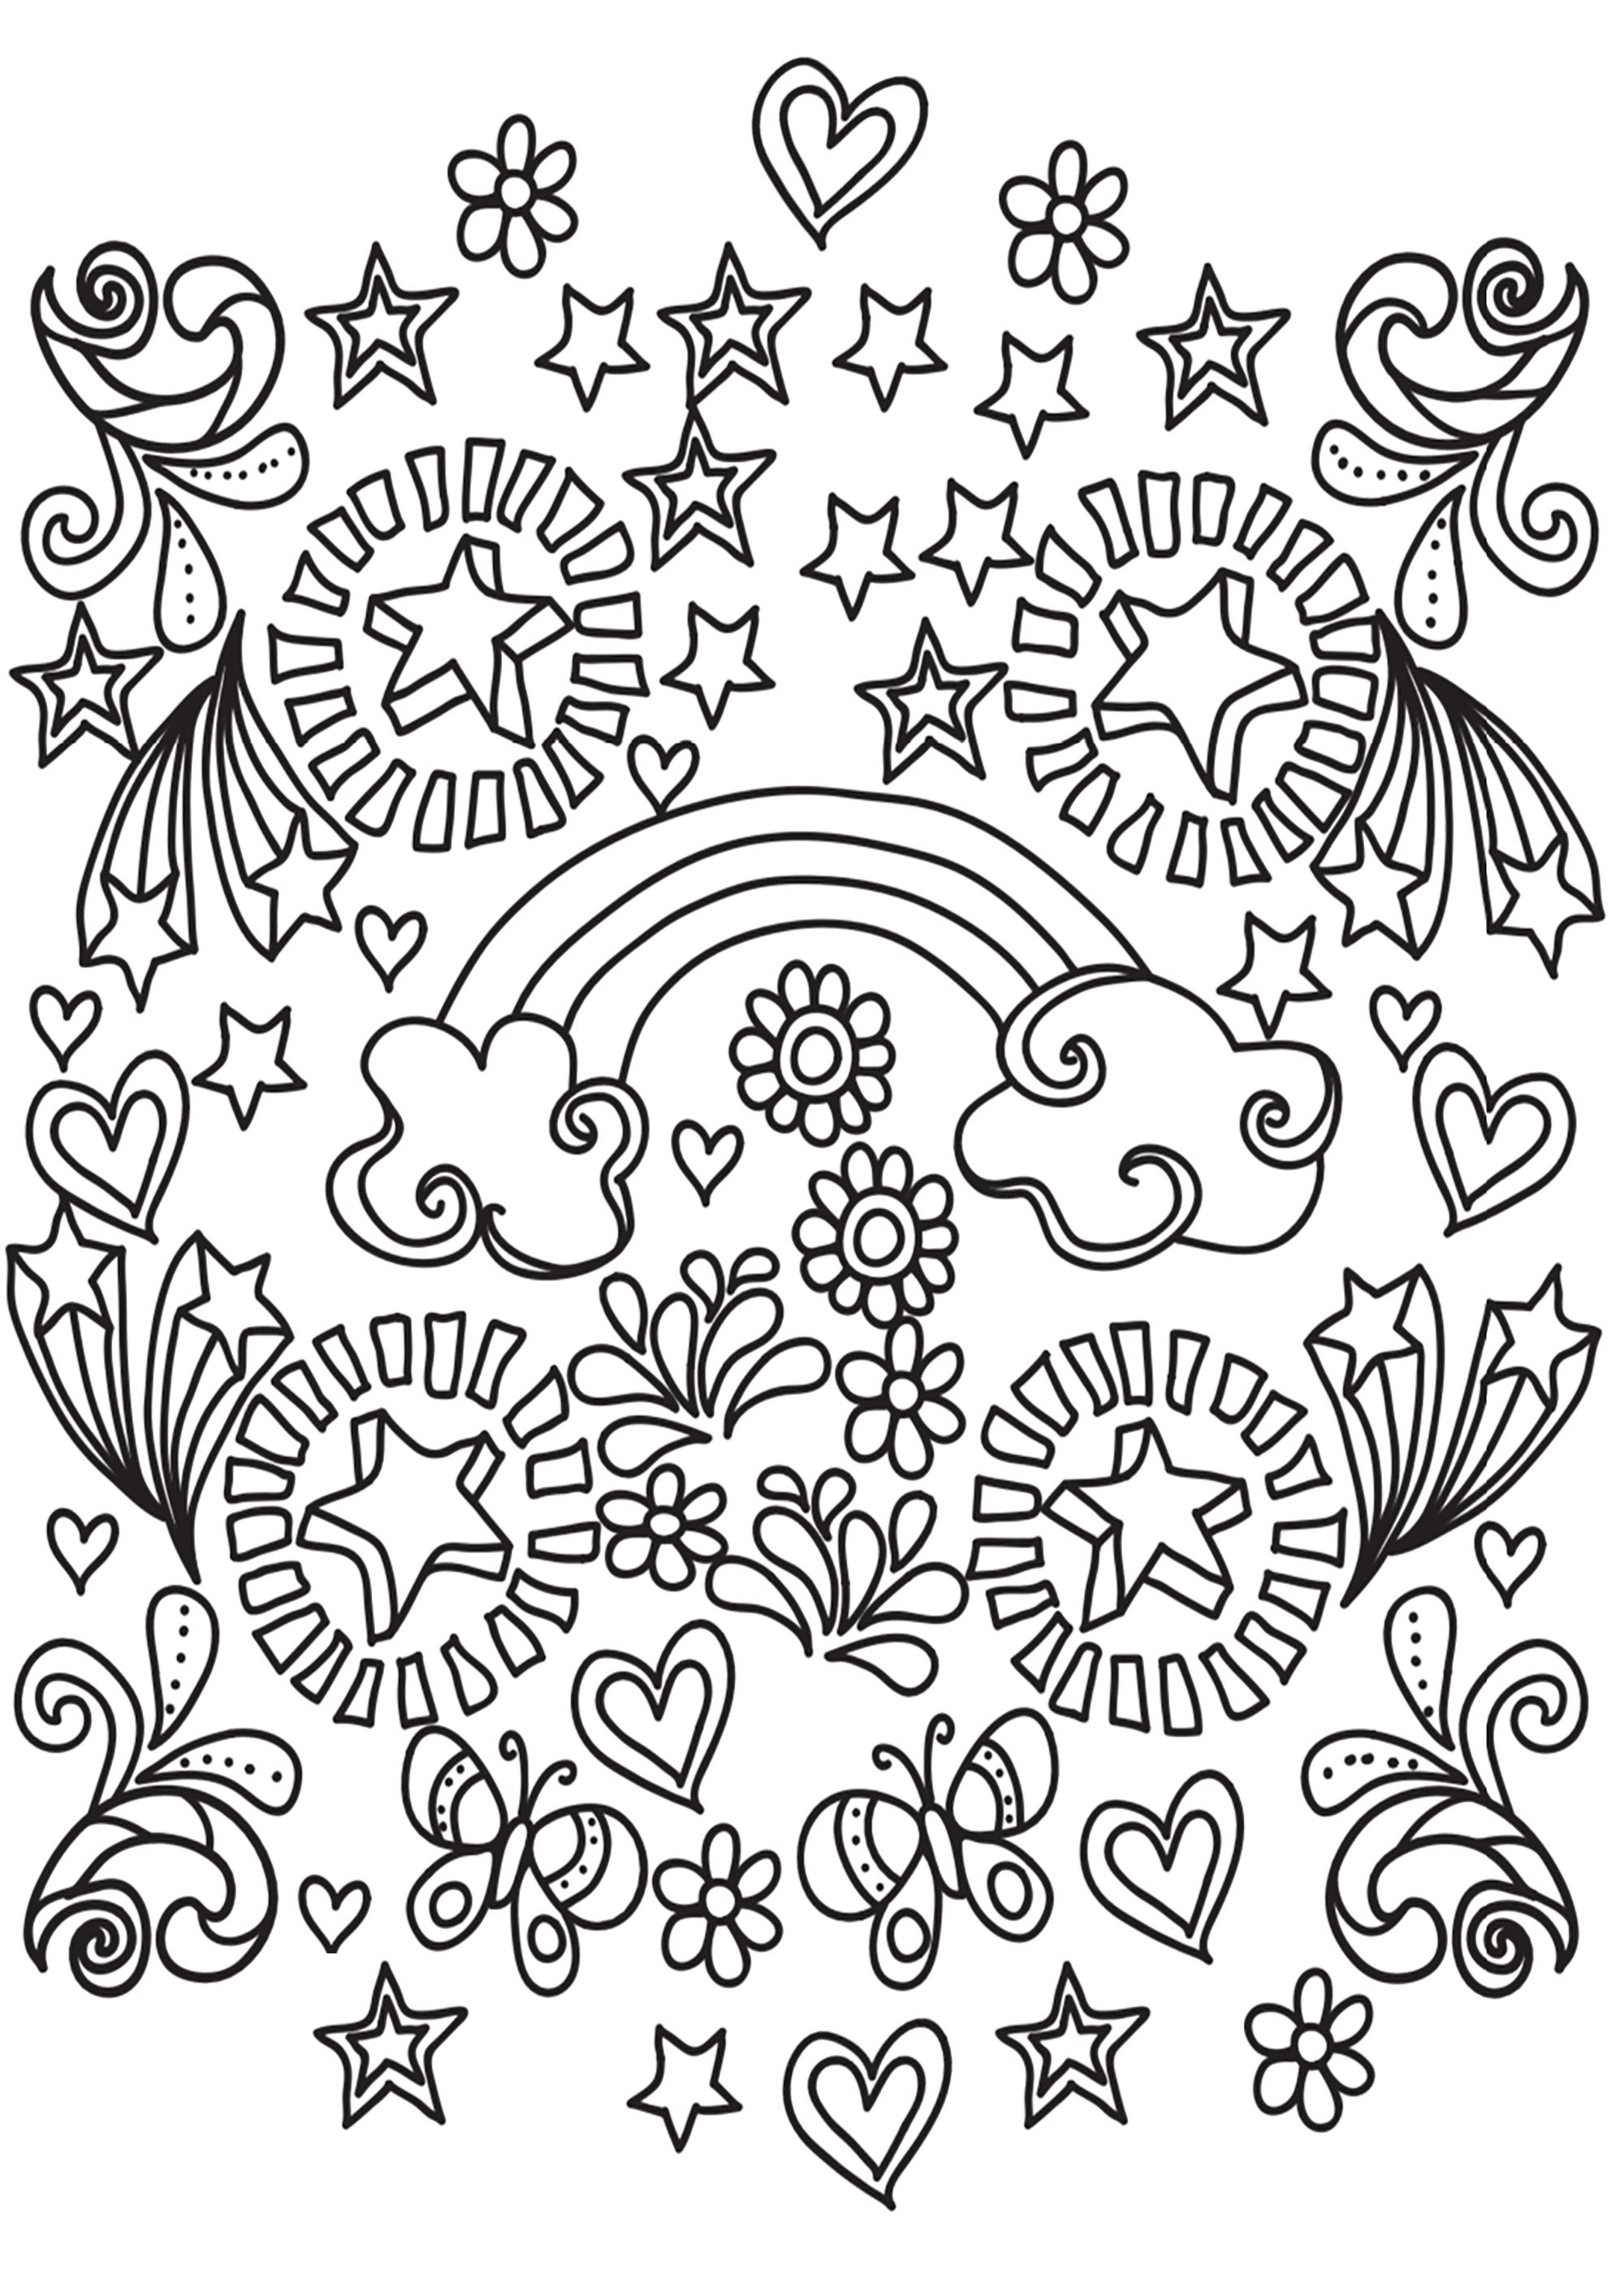 Ein Doodle voller Formen, Themen und Motive, die für Lebensfreude stehen. Sterne, Herzen, Regenbögen, Schmetterlinge... Du wirst dieses Malbuch mit einem breiten Lächeln beenden!